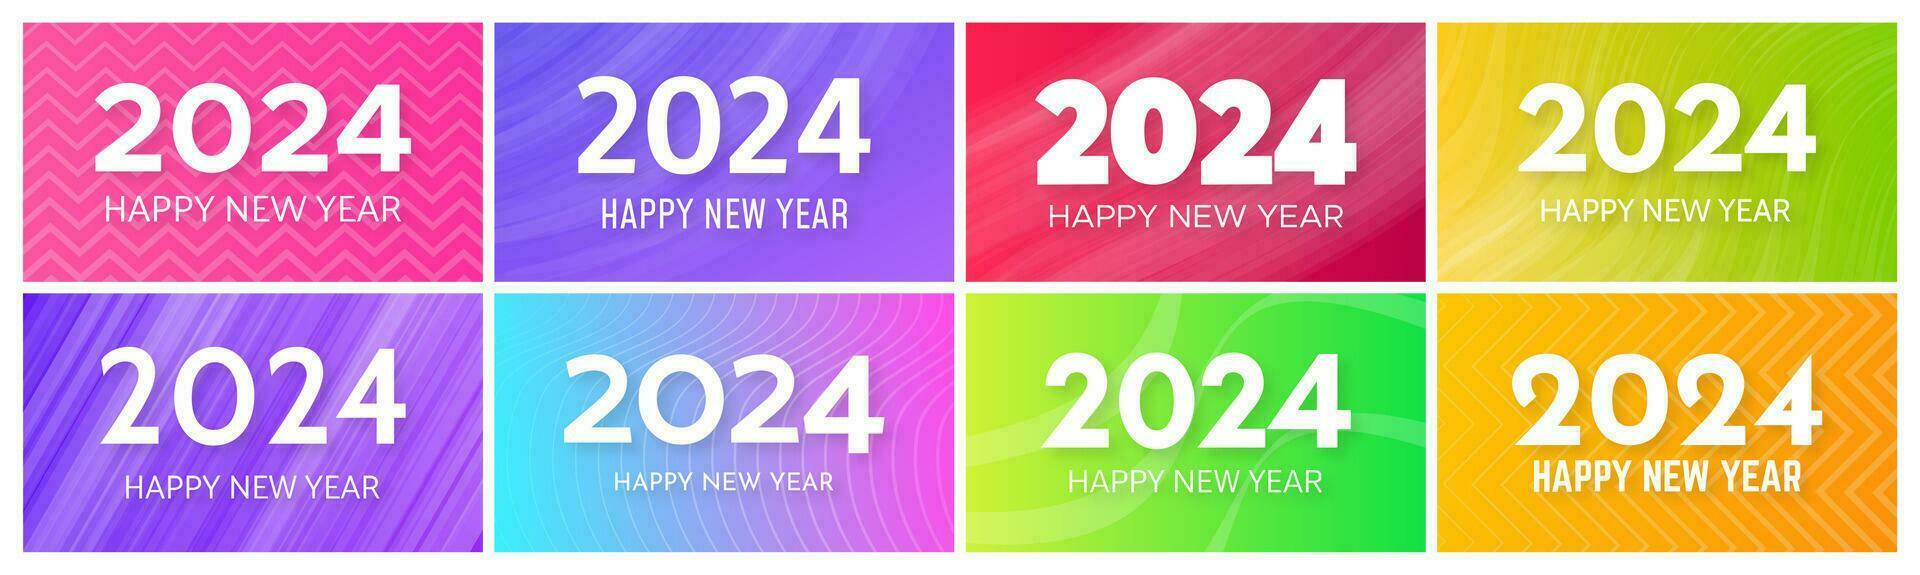 2024 content Nouveau année arrière-plans. ensemble de huit moderne salutation bannière modèles avec blanc 2024 Nouveau année Nombres sur coloré abstrait arrière-plans avec lignes. vecteur illustration